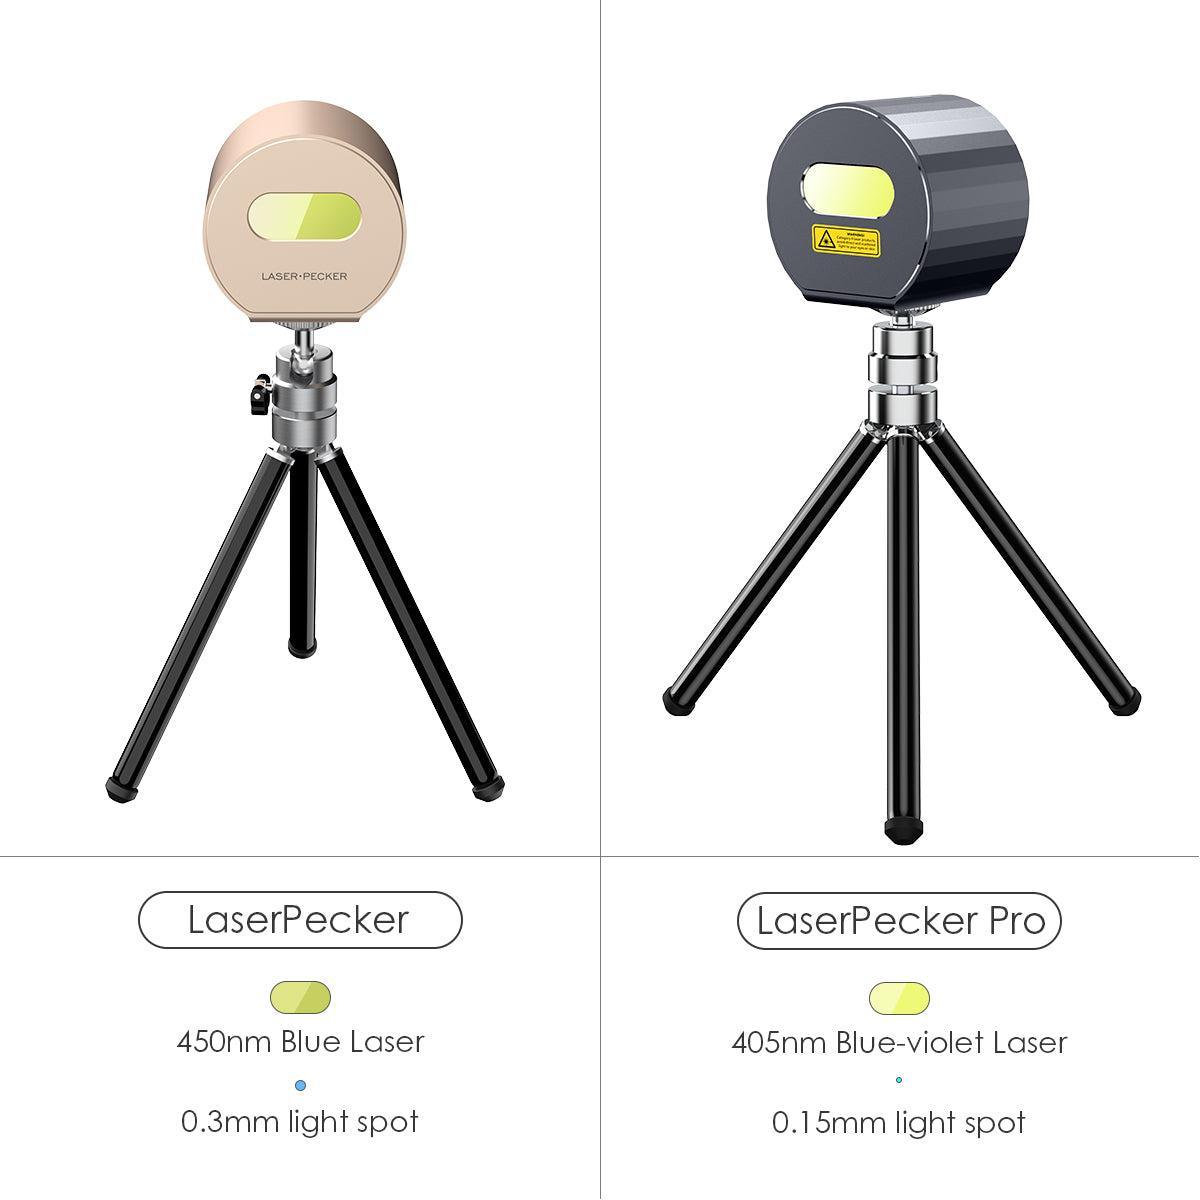 LaserPecker vs LaserPecker Pro Laser Engraver 